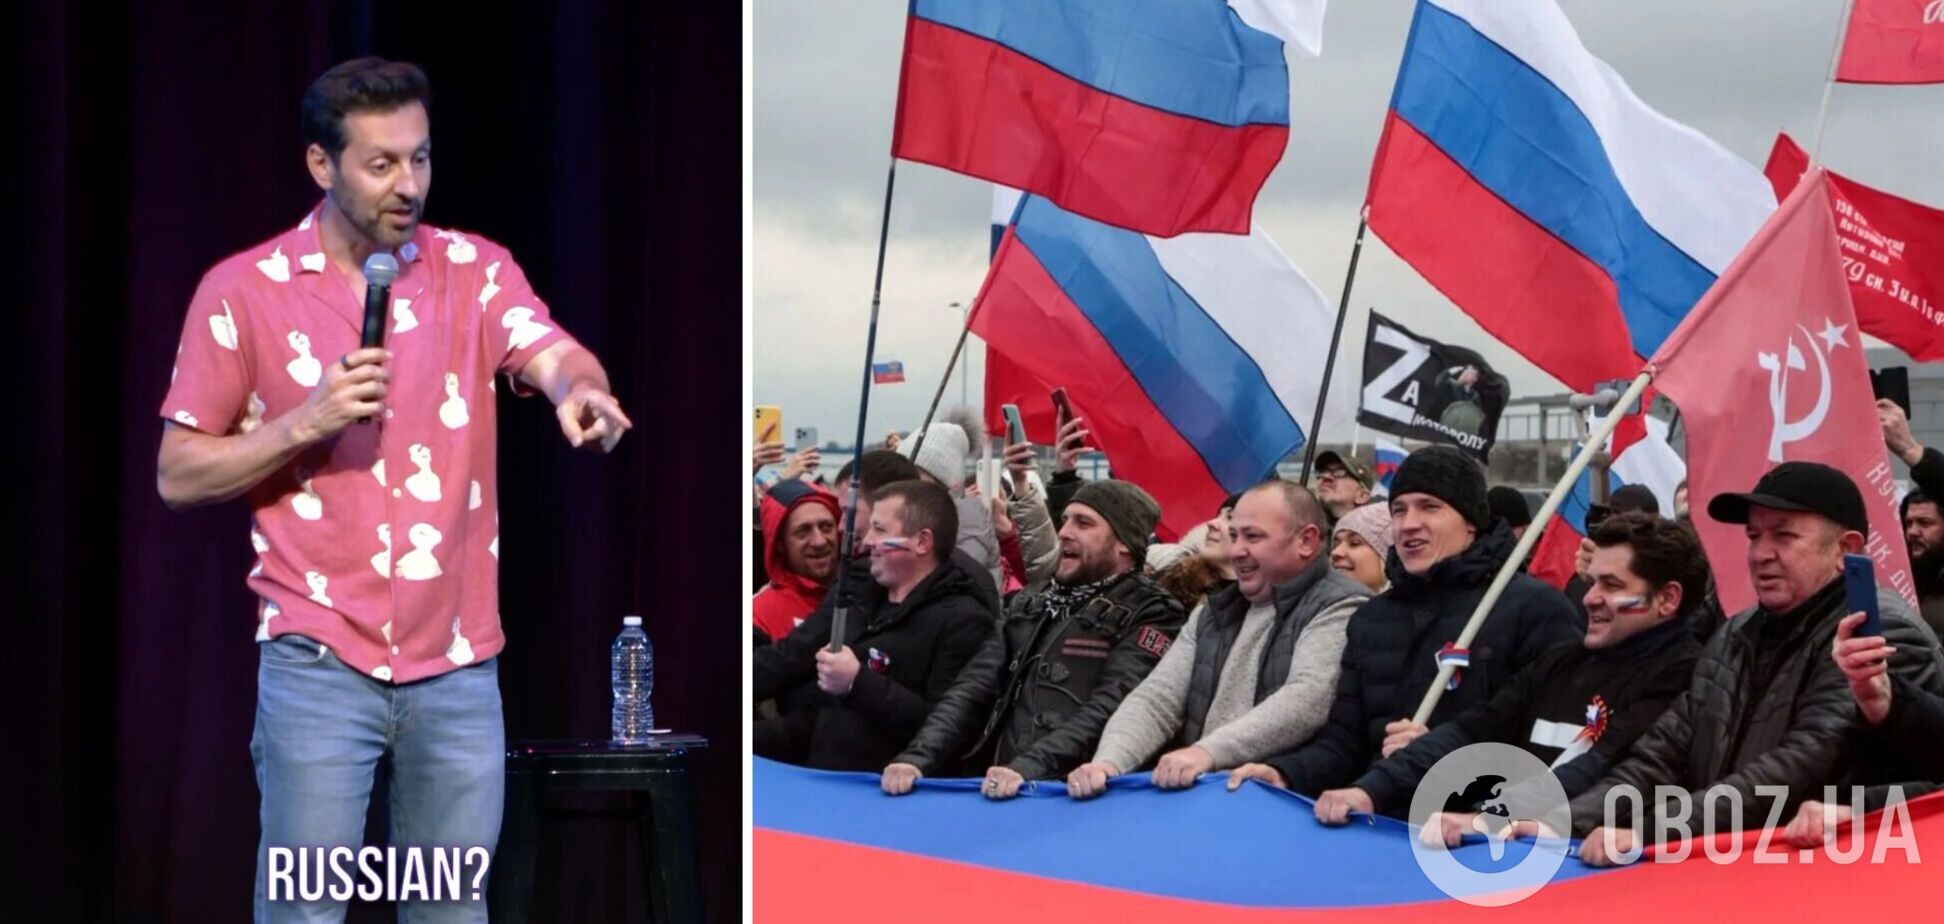 Известный комик высмеял россиянку на своем концерте, сравнив ее с украинкой в зале, и извинился вместо 'ужасных людей'